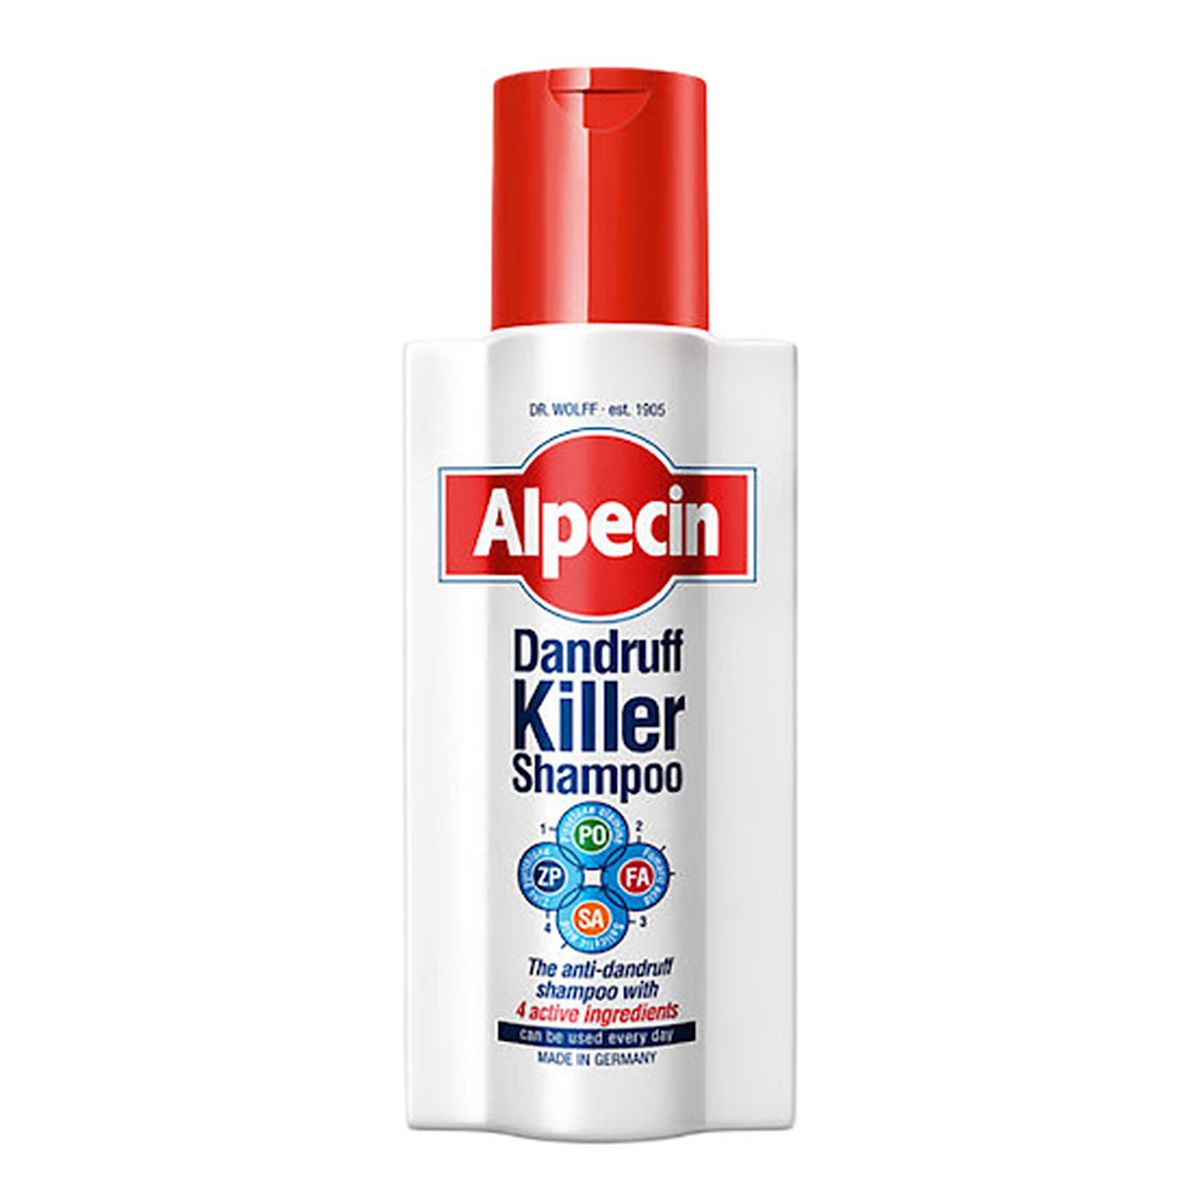 Alpecin Dandfuff killer shampoo szampon przeciwłupieżowy 250ml